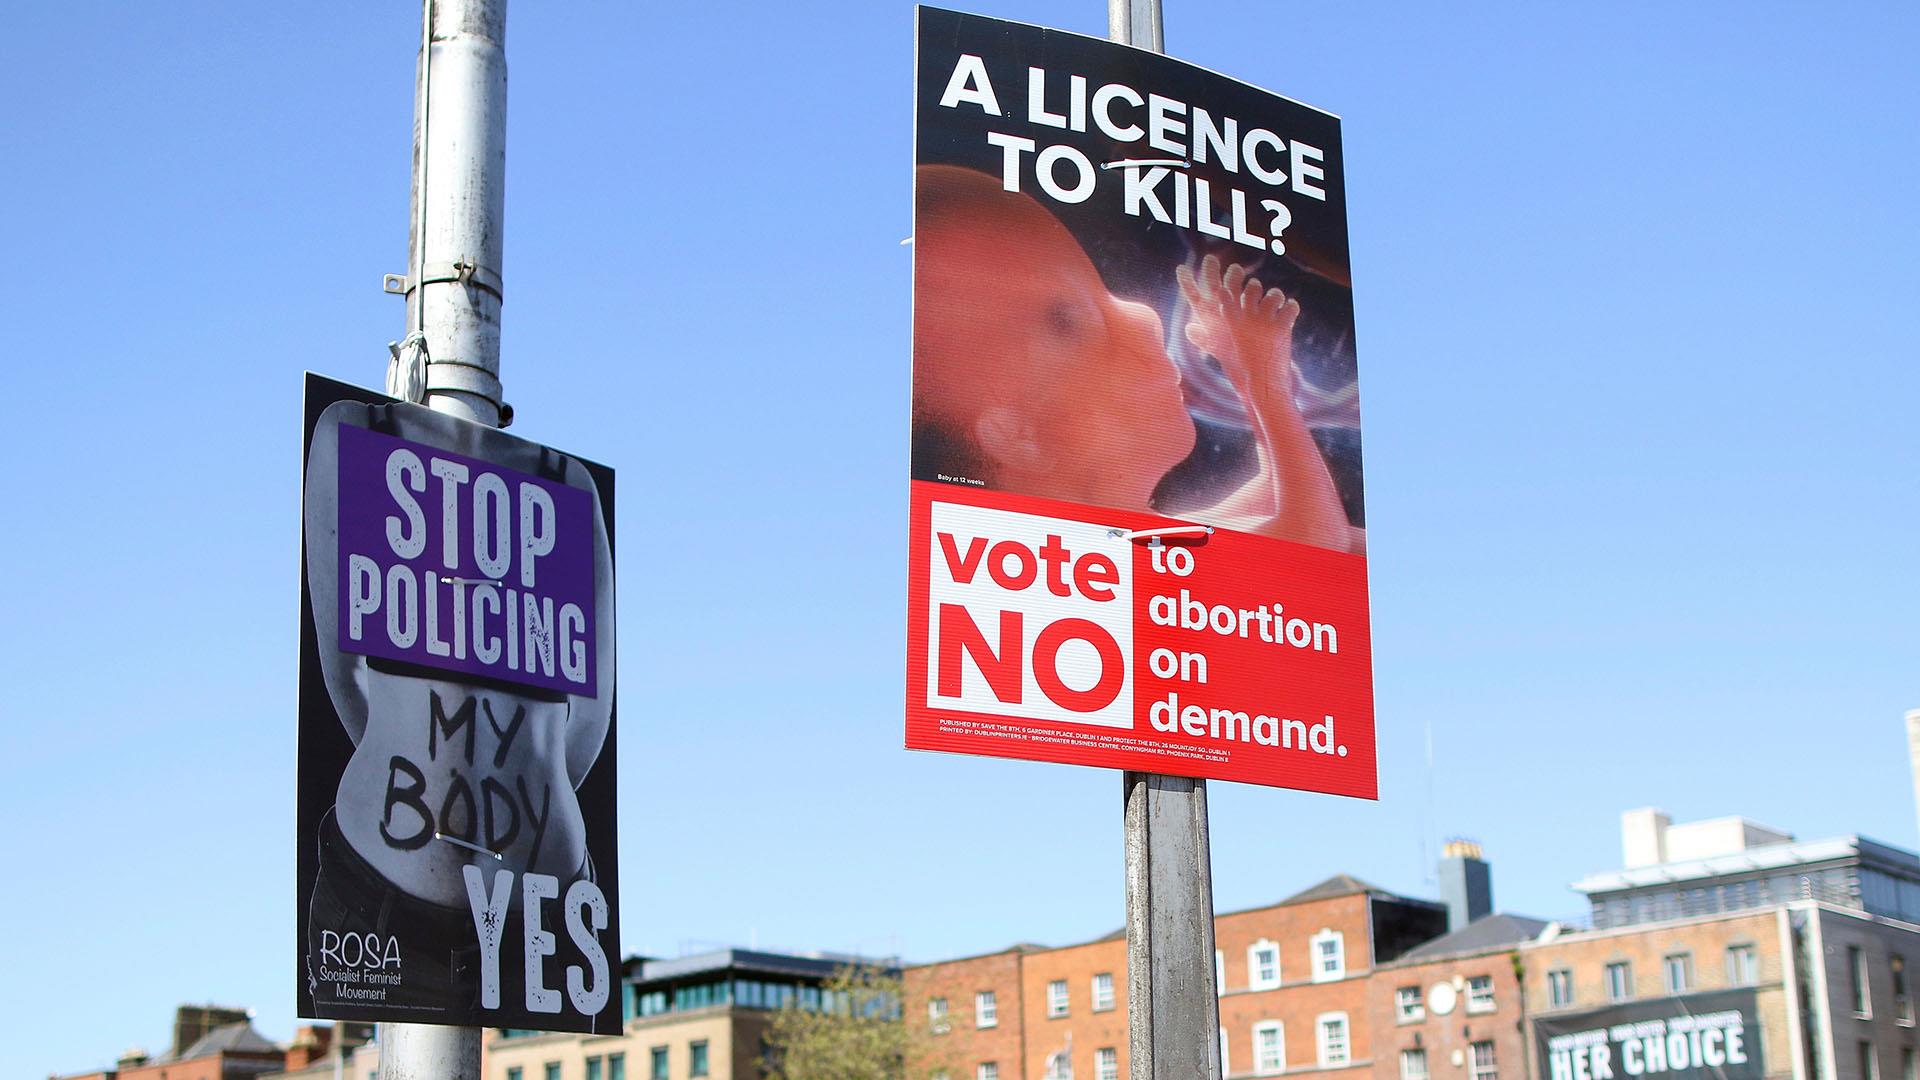 ÃŽâ€˜Ãâ‚¬ÃŽÂ¿Ãâ€žÃŽÂ­ÃŽÂ»ÃŽÂµÃÆ’ÃŽÂ¼ÃŽÂ± ÃŽÂµÃŽÂ¹ÃŽÂºÃÅ’ÃŽÂ½ÃŽÂ±Ãâ€š ÃŽÂ³ÃŽÂ¹ÃŽÂ± ireland abortion referendum